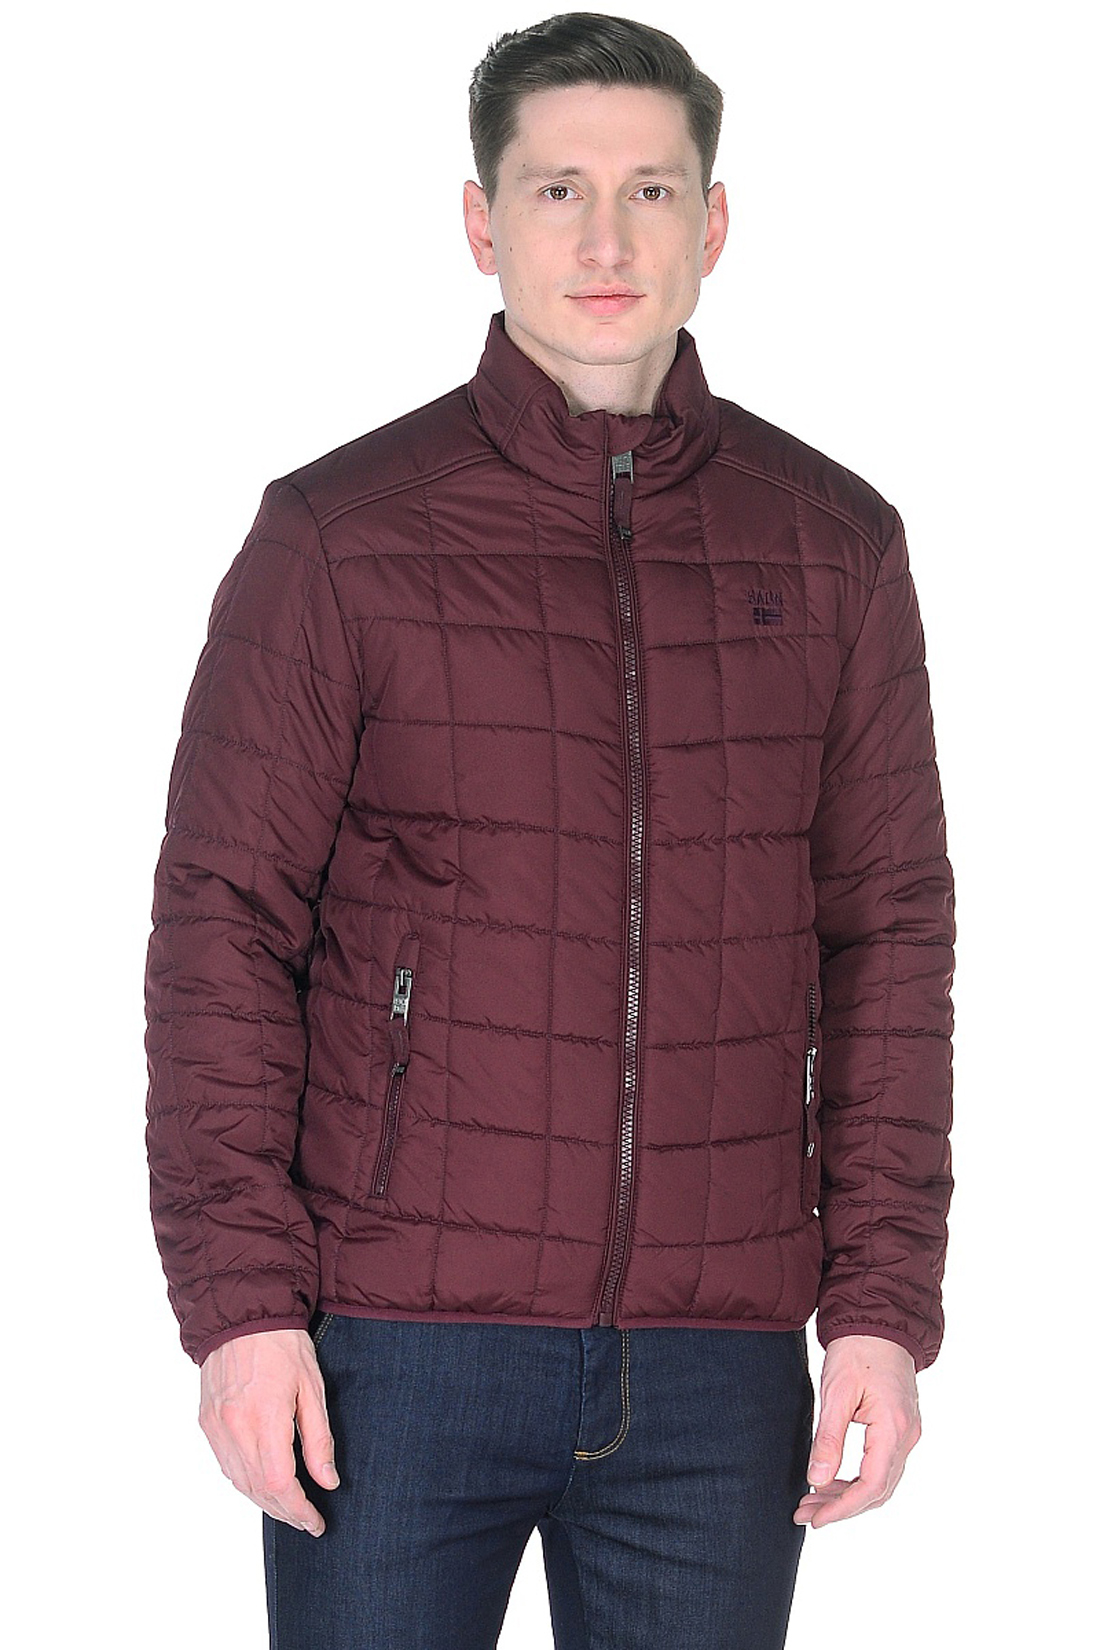 Куртка с квадратной простёжкой (арт. baon B538012), размер 3XL, цвет бордовый Куртка с квадратной простёжкой (арт. baon B538012) - фото 1